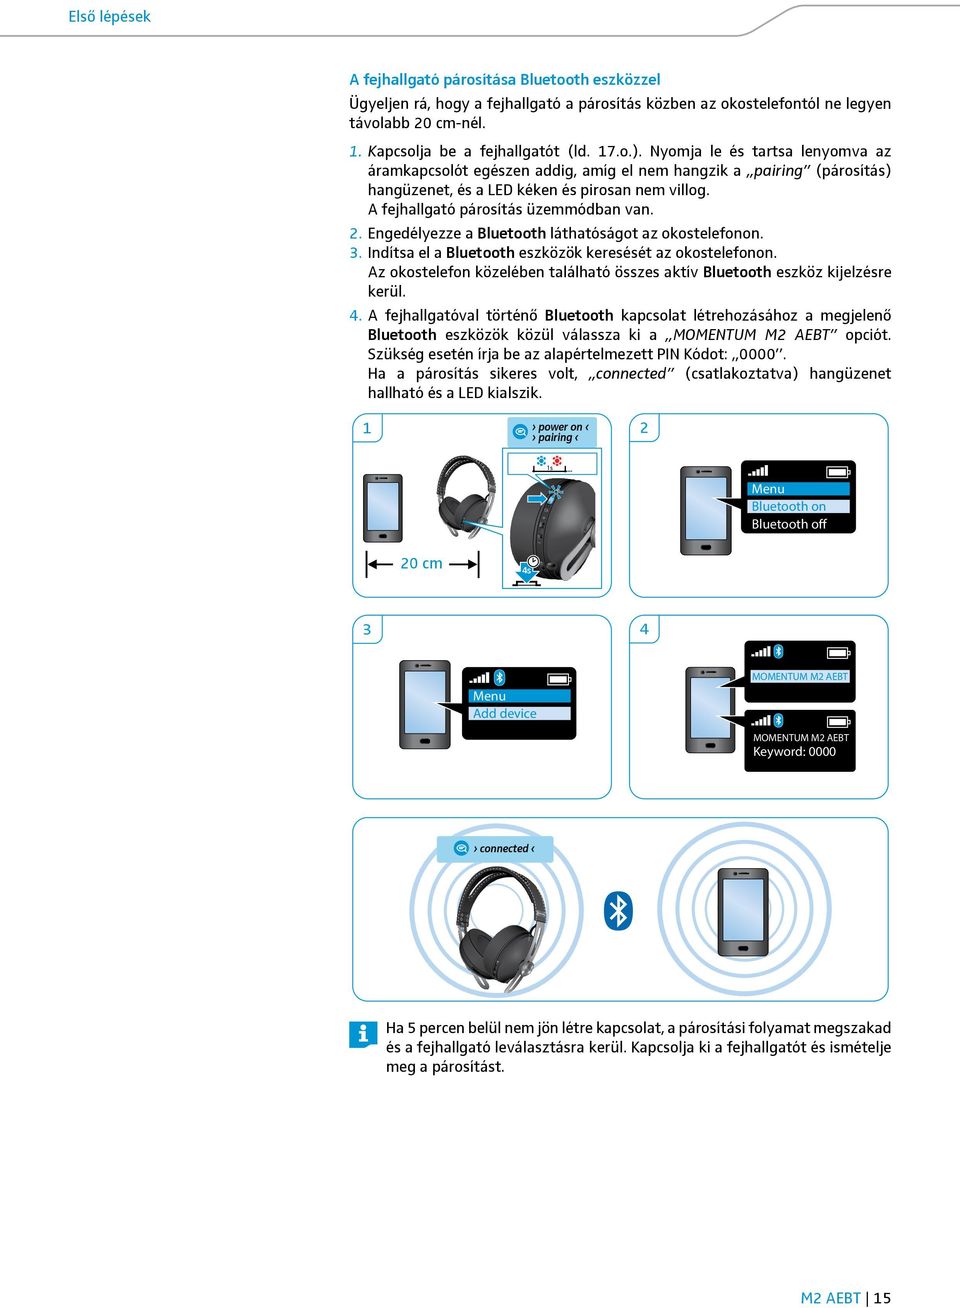 A fejhallgató párosítás üzemmódban van. 2. Engedélyezze a Bluetooth láthatóságot az okostelefonon. 3. Indítsa el a Bluetooth eszközök keresését az okostelefonon.